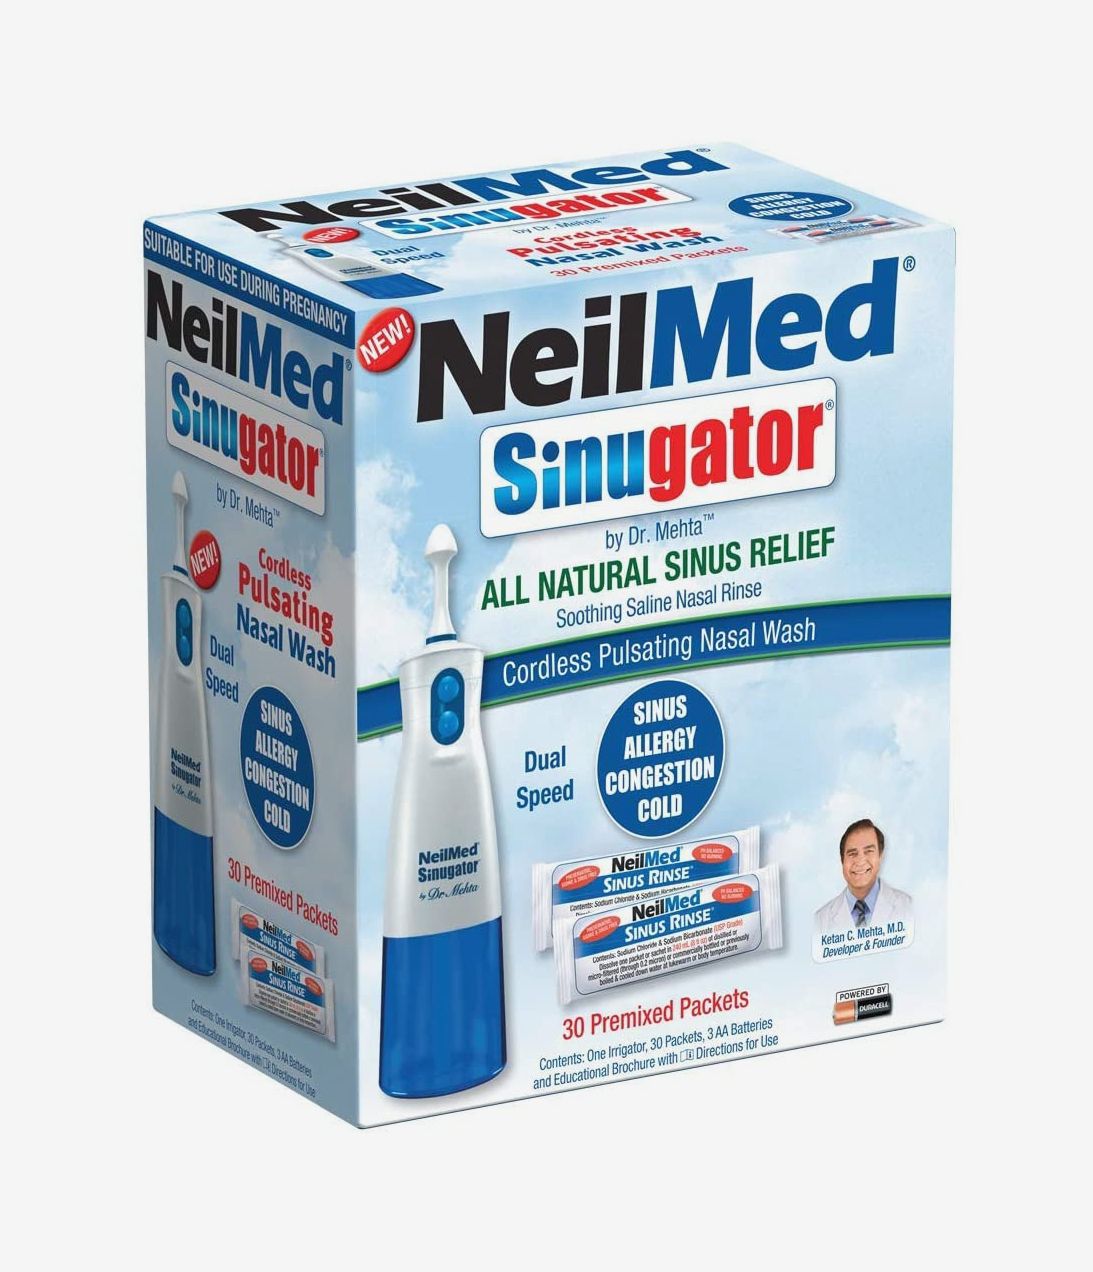 NeilMed Sinus Rinse Pediatric Starter Kit with 30 Premixed Packets